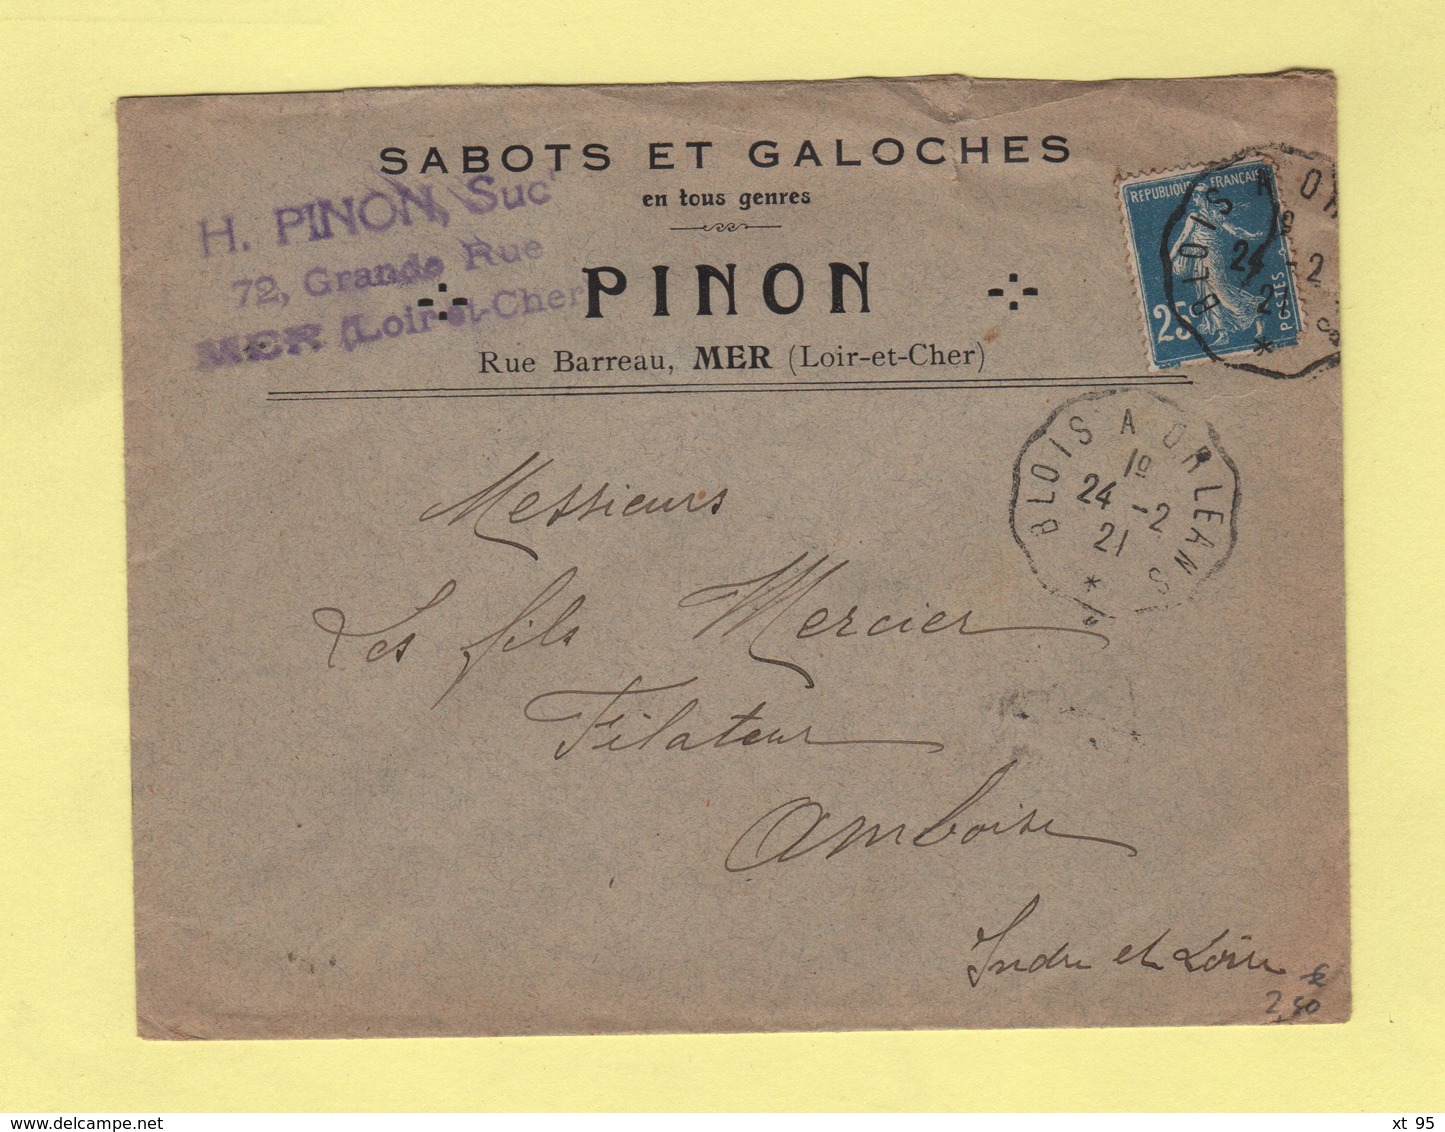 Convoyeur - Blois à Orleans - 1921 - Sabots Et Galoches - Railway Post